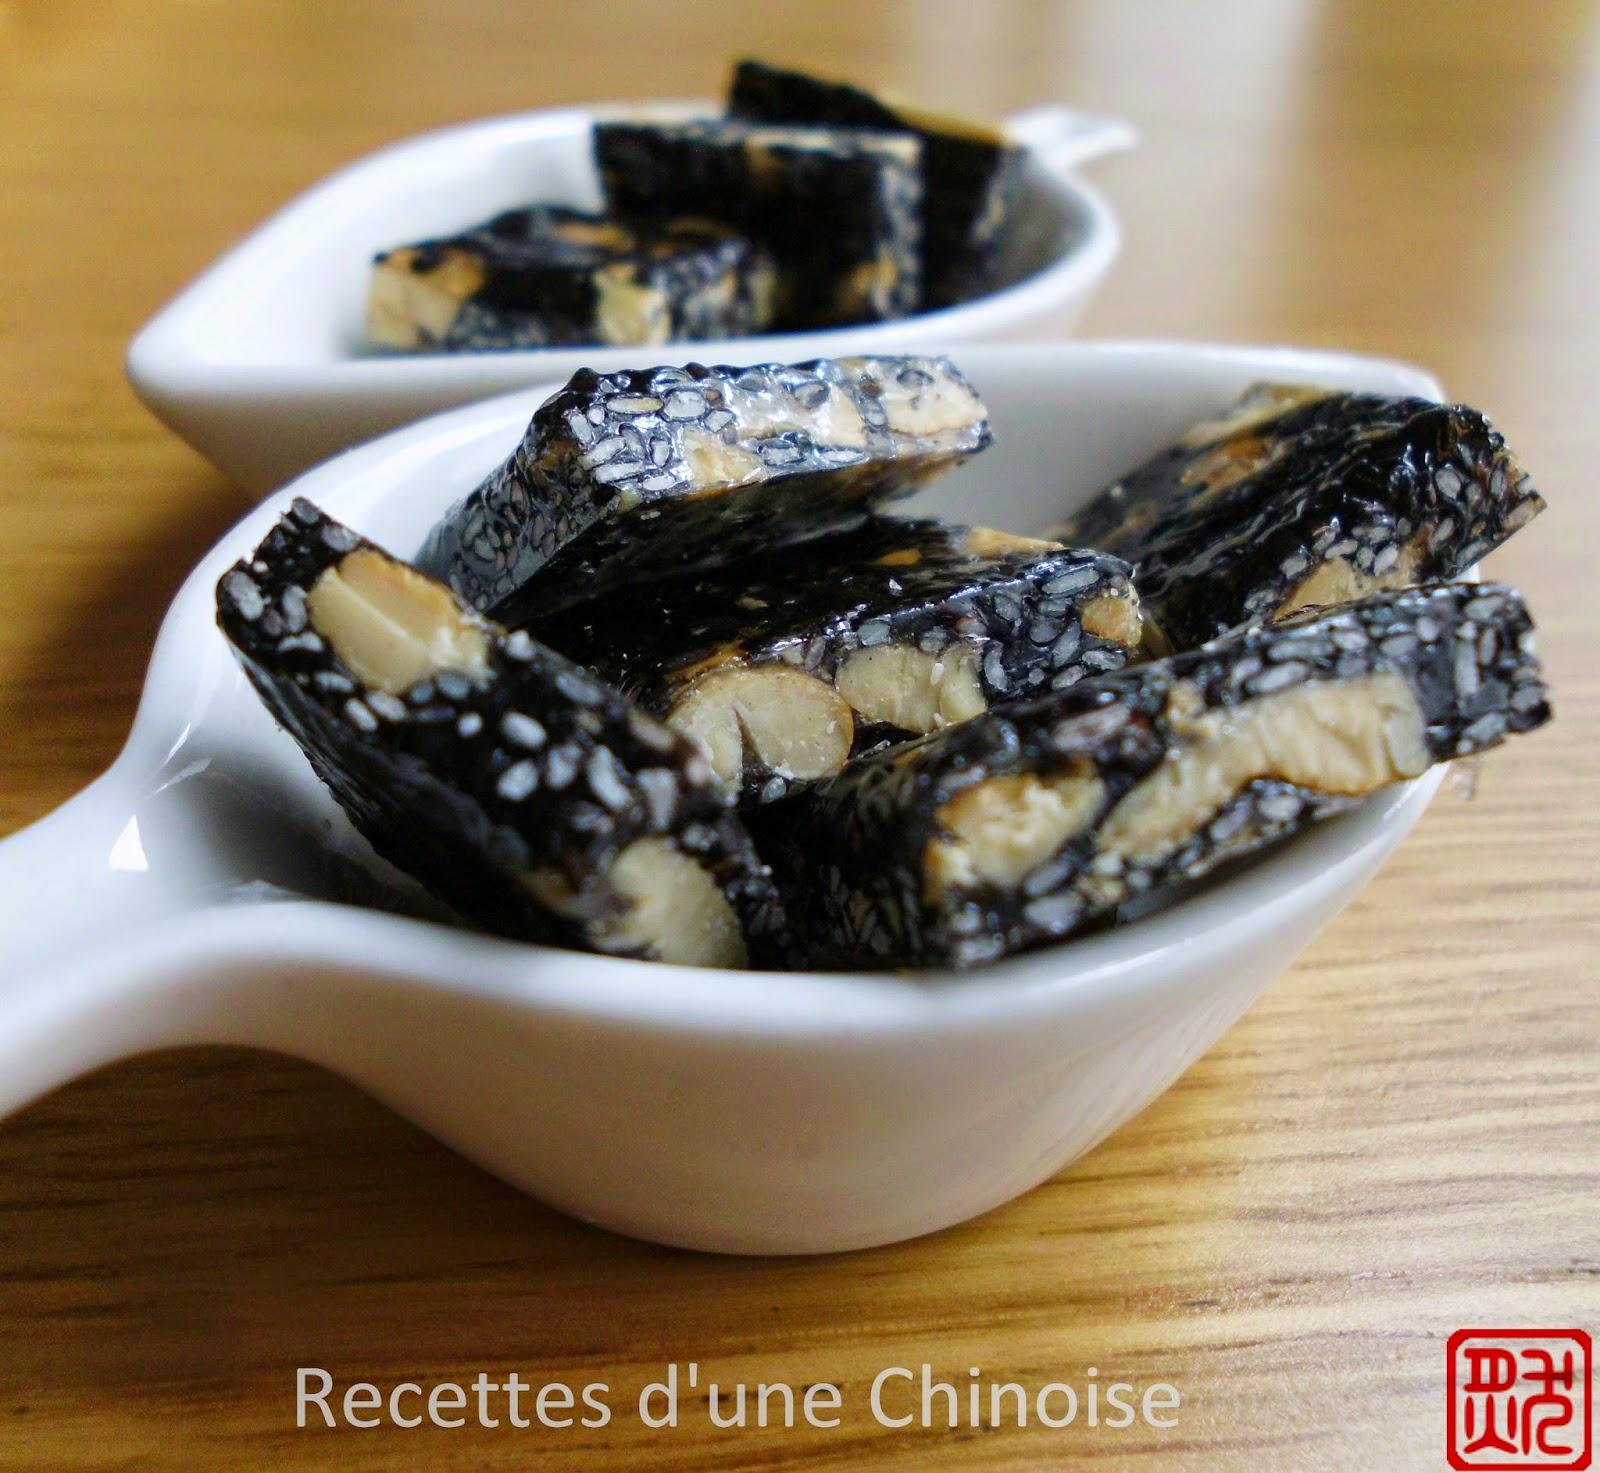 Nougats aux noix de cajou et sésames noirs 腰果芝麻糖 yāoguǒ zhīma táng